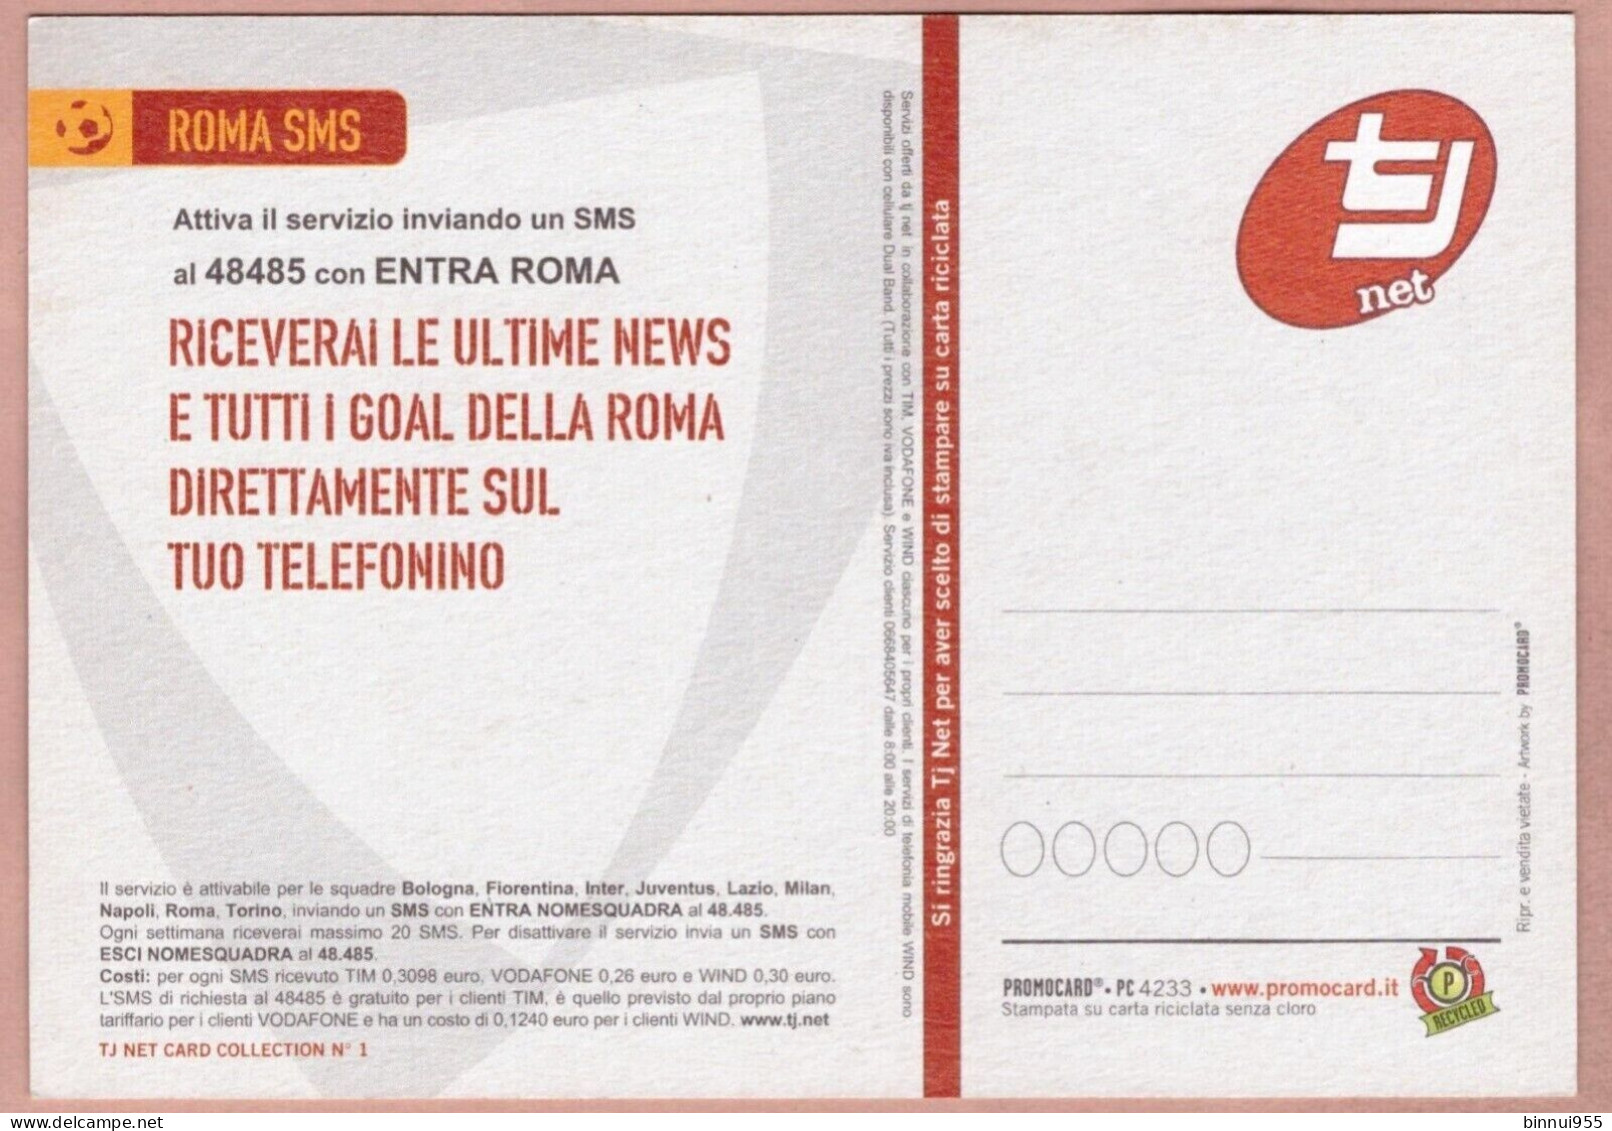 Cartolina Calcio Roma A Trigoria C'è La Gloria A Formello La Cicoria - Non Viaggiata - Soccer